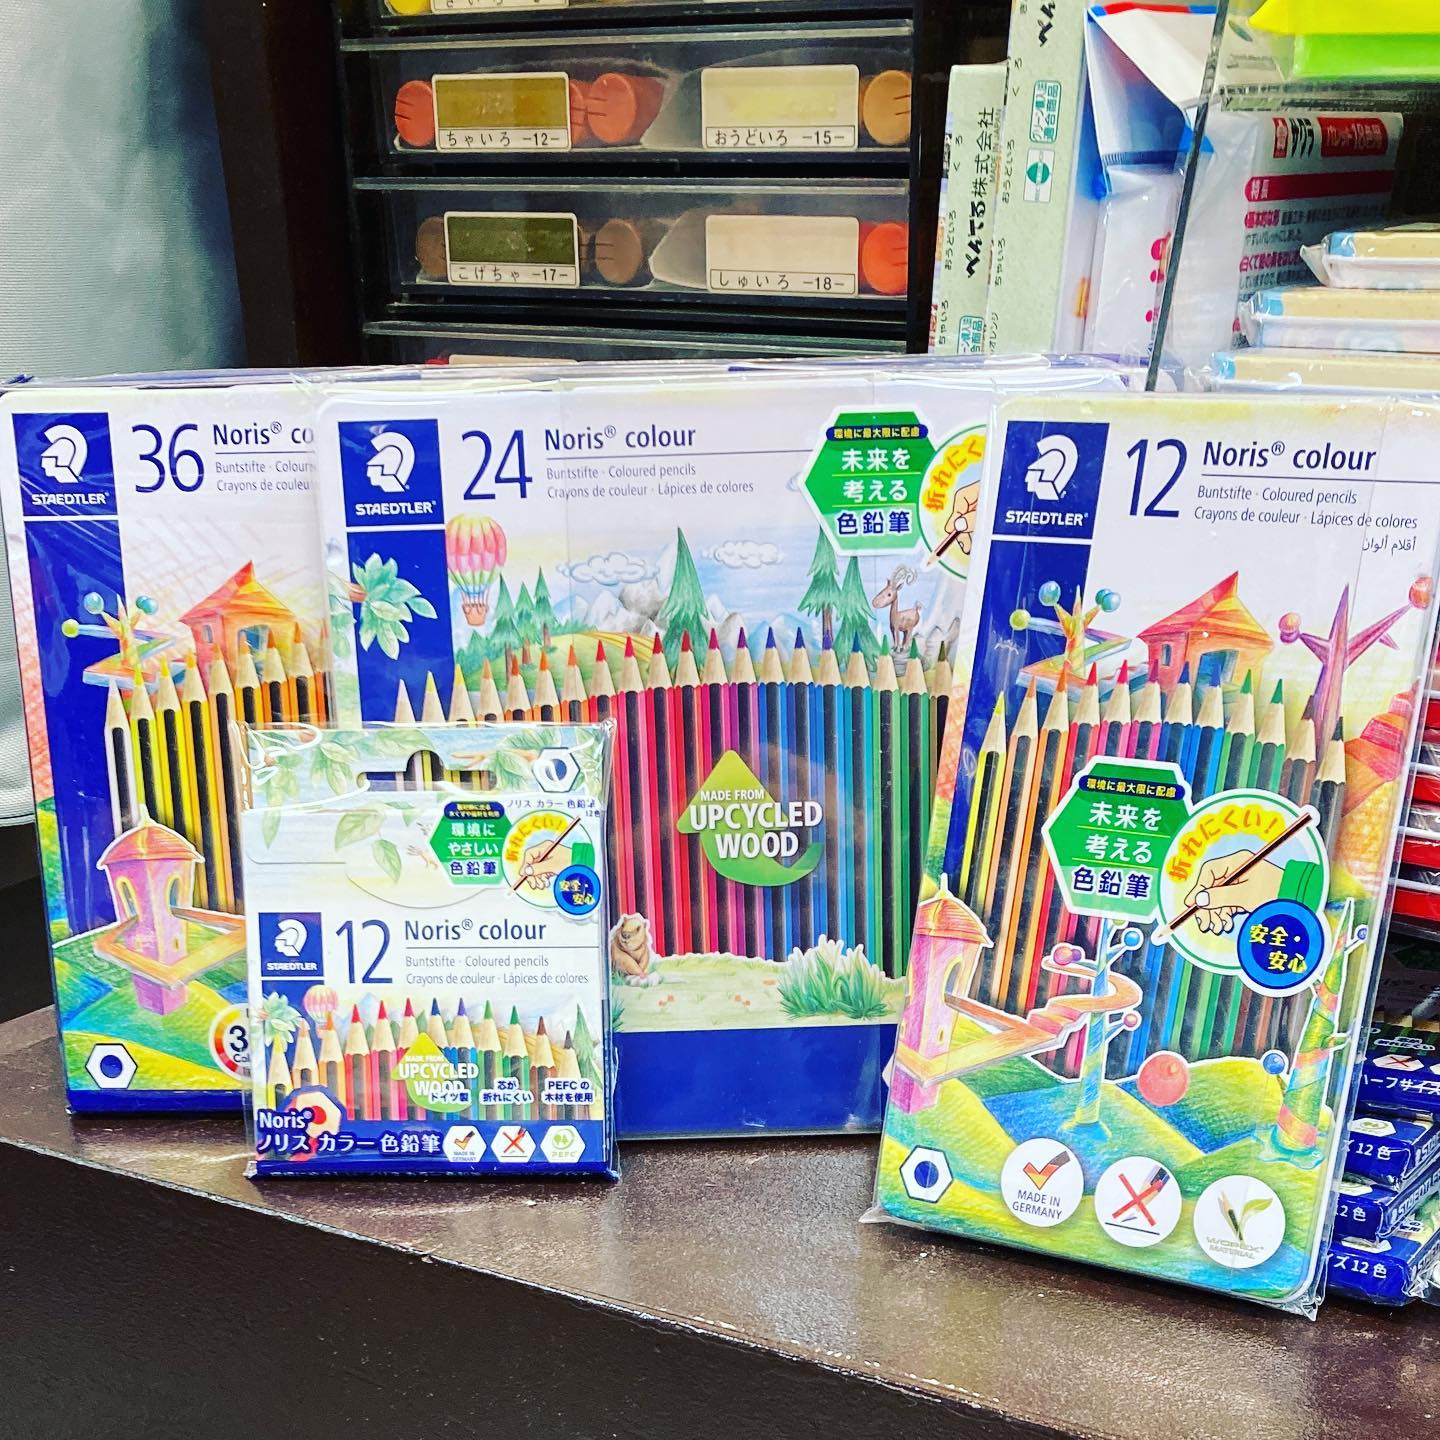 こんにちはマエダ文具店です！ステッドラーの色鉛筆が入荷しました！環境にもやさしく、折れにくい色鉛筆です。12色、24色、36色パック、そして12色ショートサイズがあります。ドイツ製なので日本のカラーとは少し違うヨーロッパの色彩感覚をお楽しみください！#マエダ文具店 #前田文具店#梅小路公園 #梅小路京都西駅#京都水族館 #京都鉄道博物館#ホテルエミオン京都 #梅小路ポテル京都 #ザロイヤルパークホテル京都梅小路 #七条センター商店街#文房具#色鉛筆 #ステッドラー#staedtler #ドイツ製 #トマトも売ってる文具店